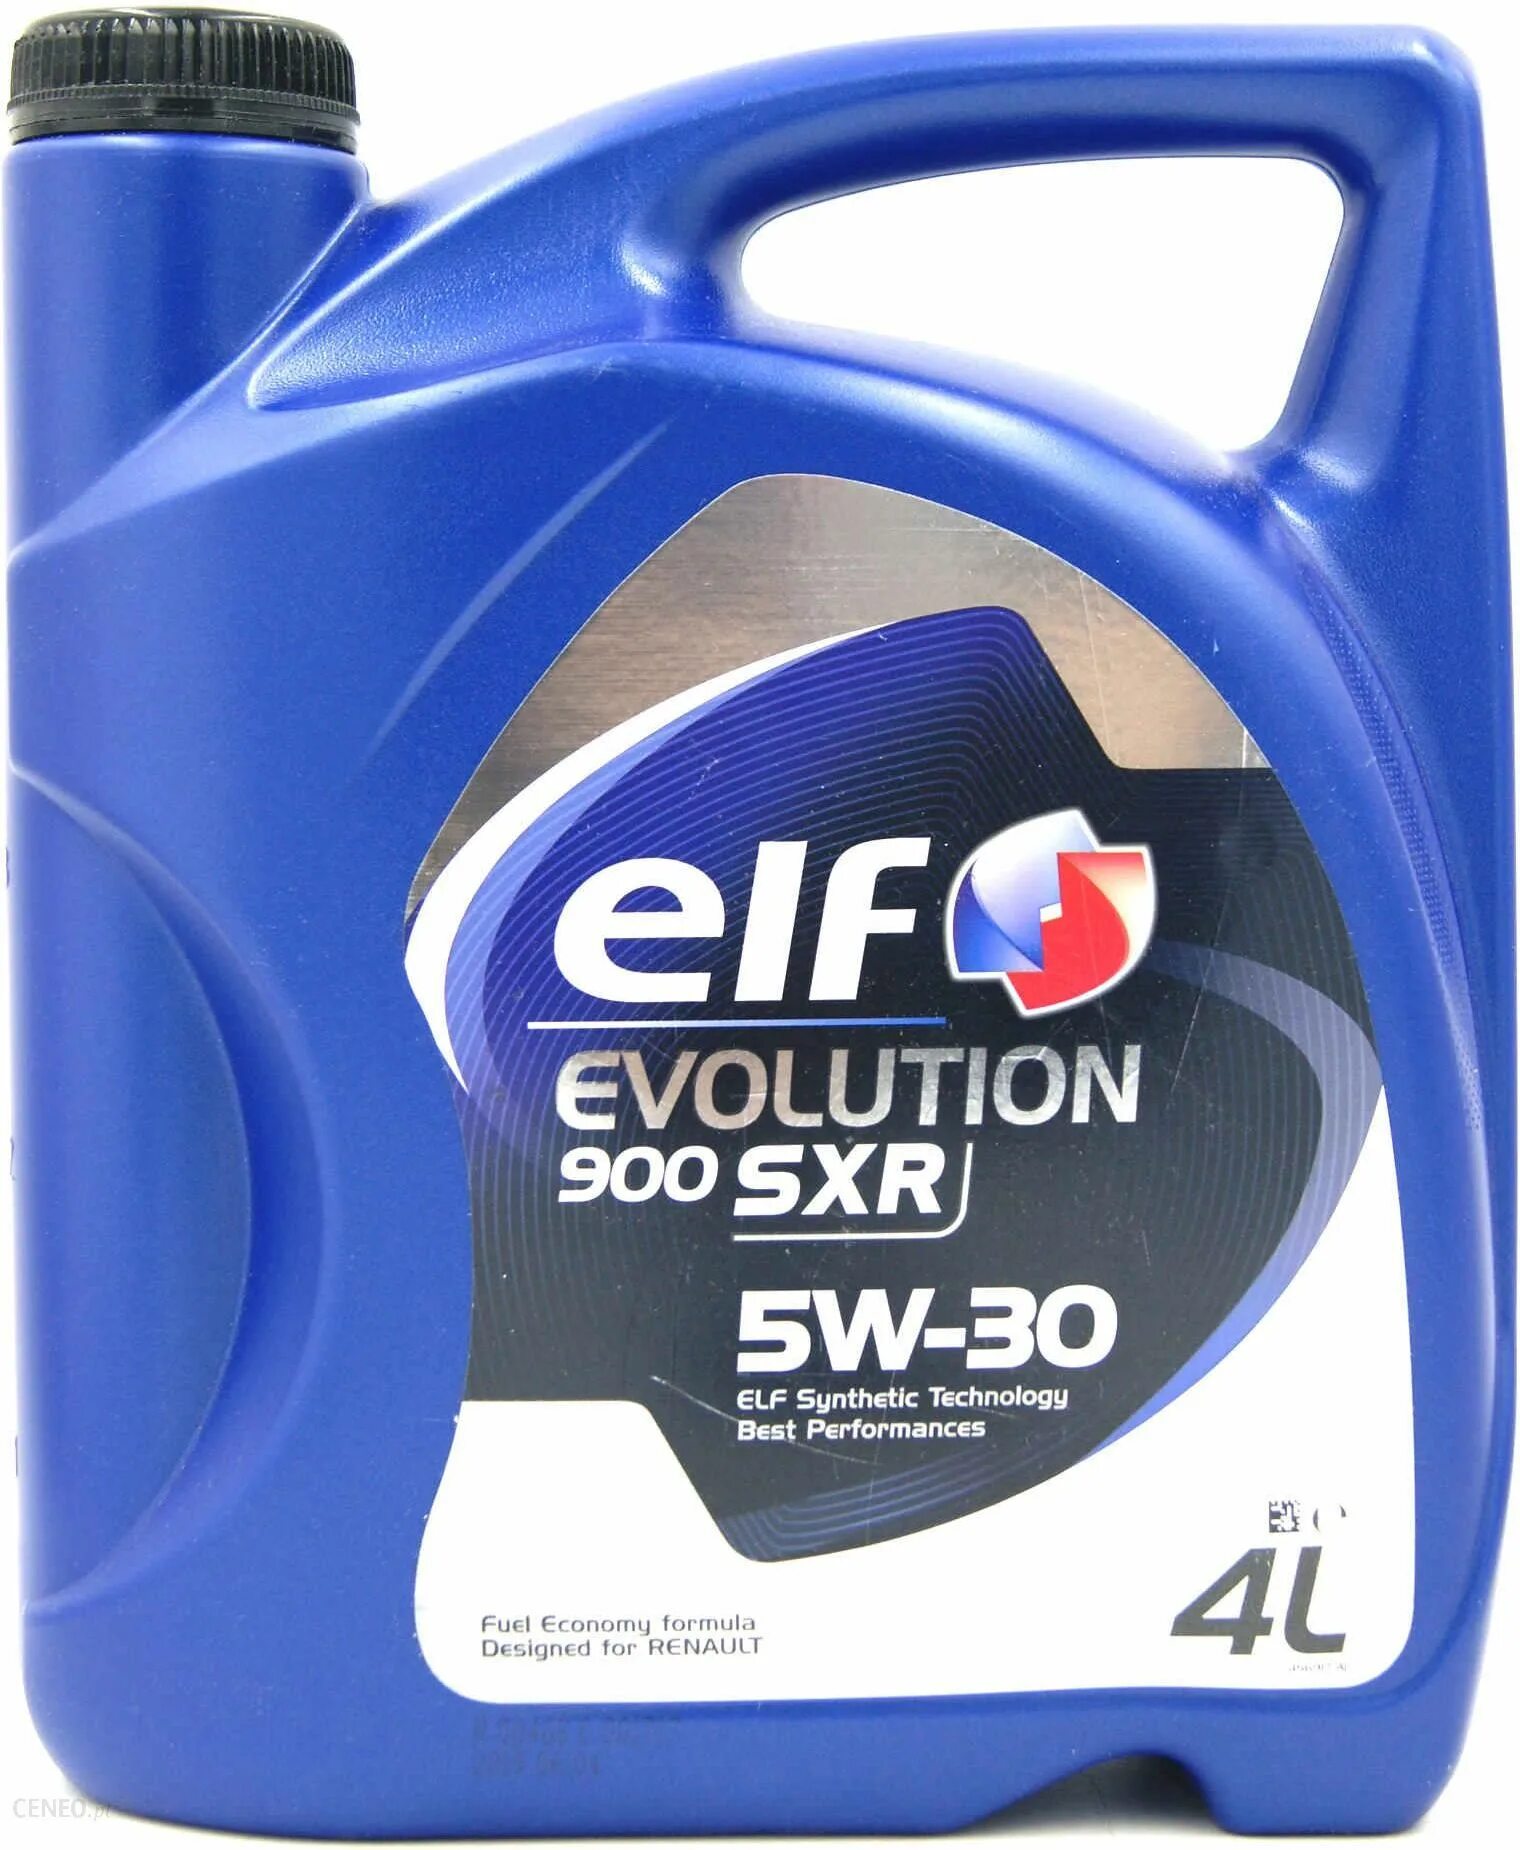 Моторное масло elf sxr 5w30. 5w30 Evolution 900 SXR 5l. Elf 5w30 Evolution 900. Elf Evolution SXR 5w30. Elf 900 SXR 5w-30.